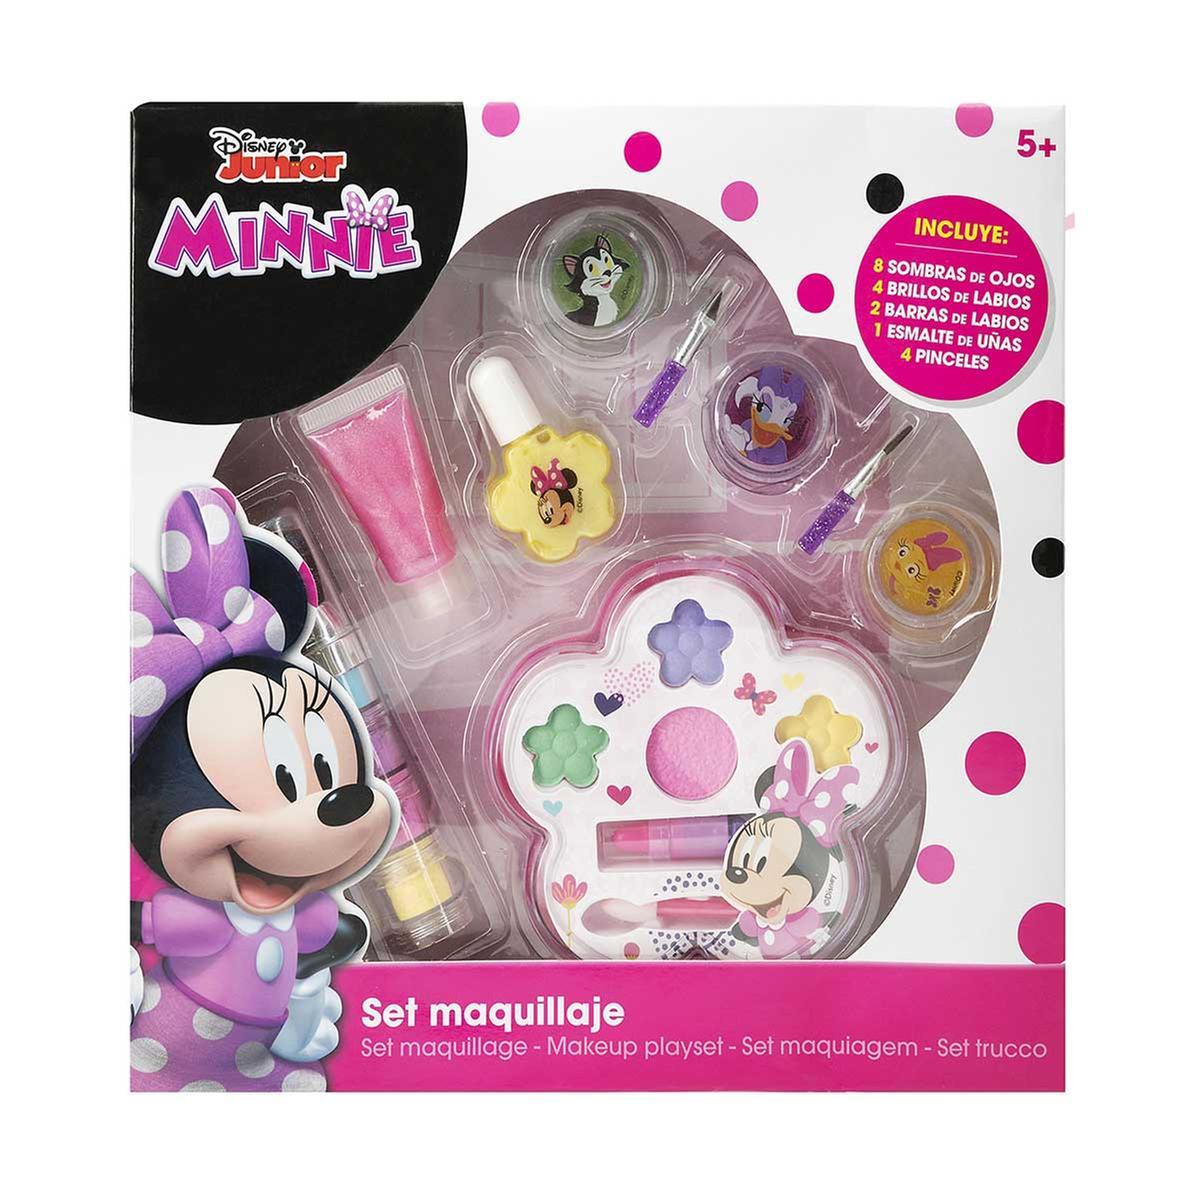 Minnie Mouse - Set de Maquillaje | Minnie Mouse. Cat 54 | Toys